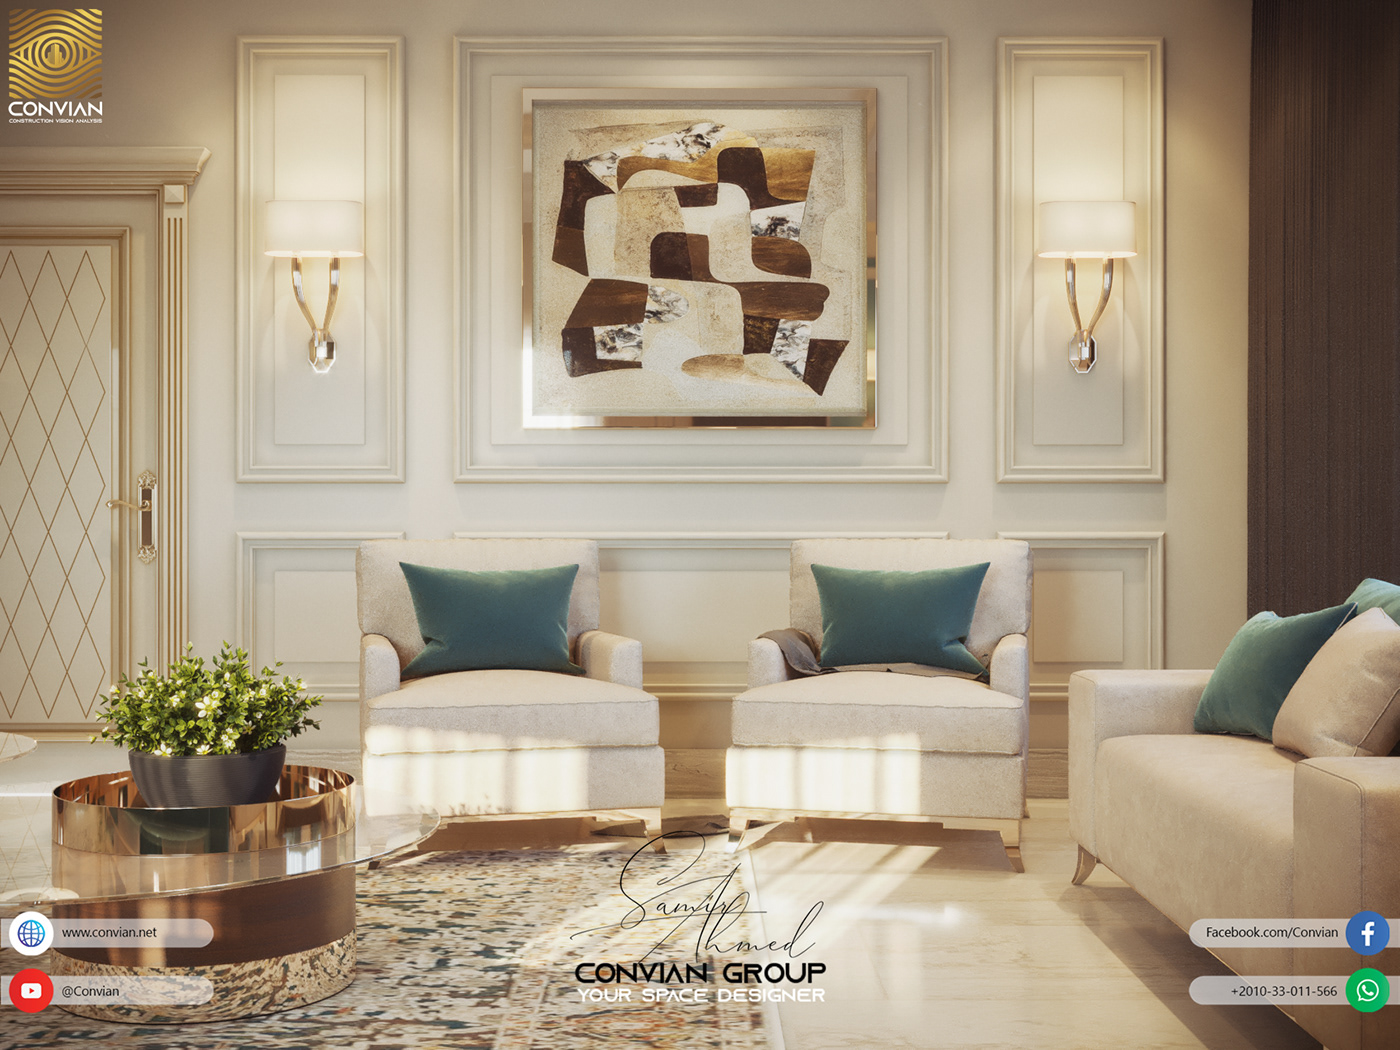 convian design exterior Interior MAJLIS modern salon samir ahmed set Villa